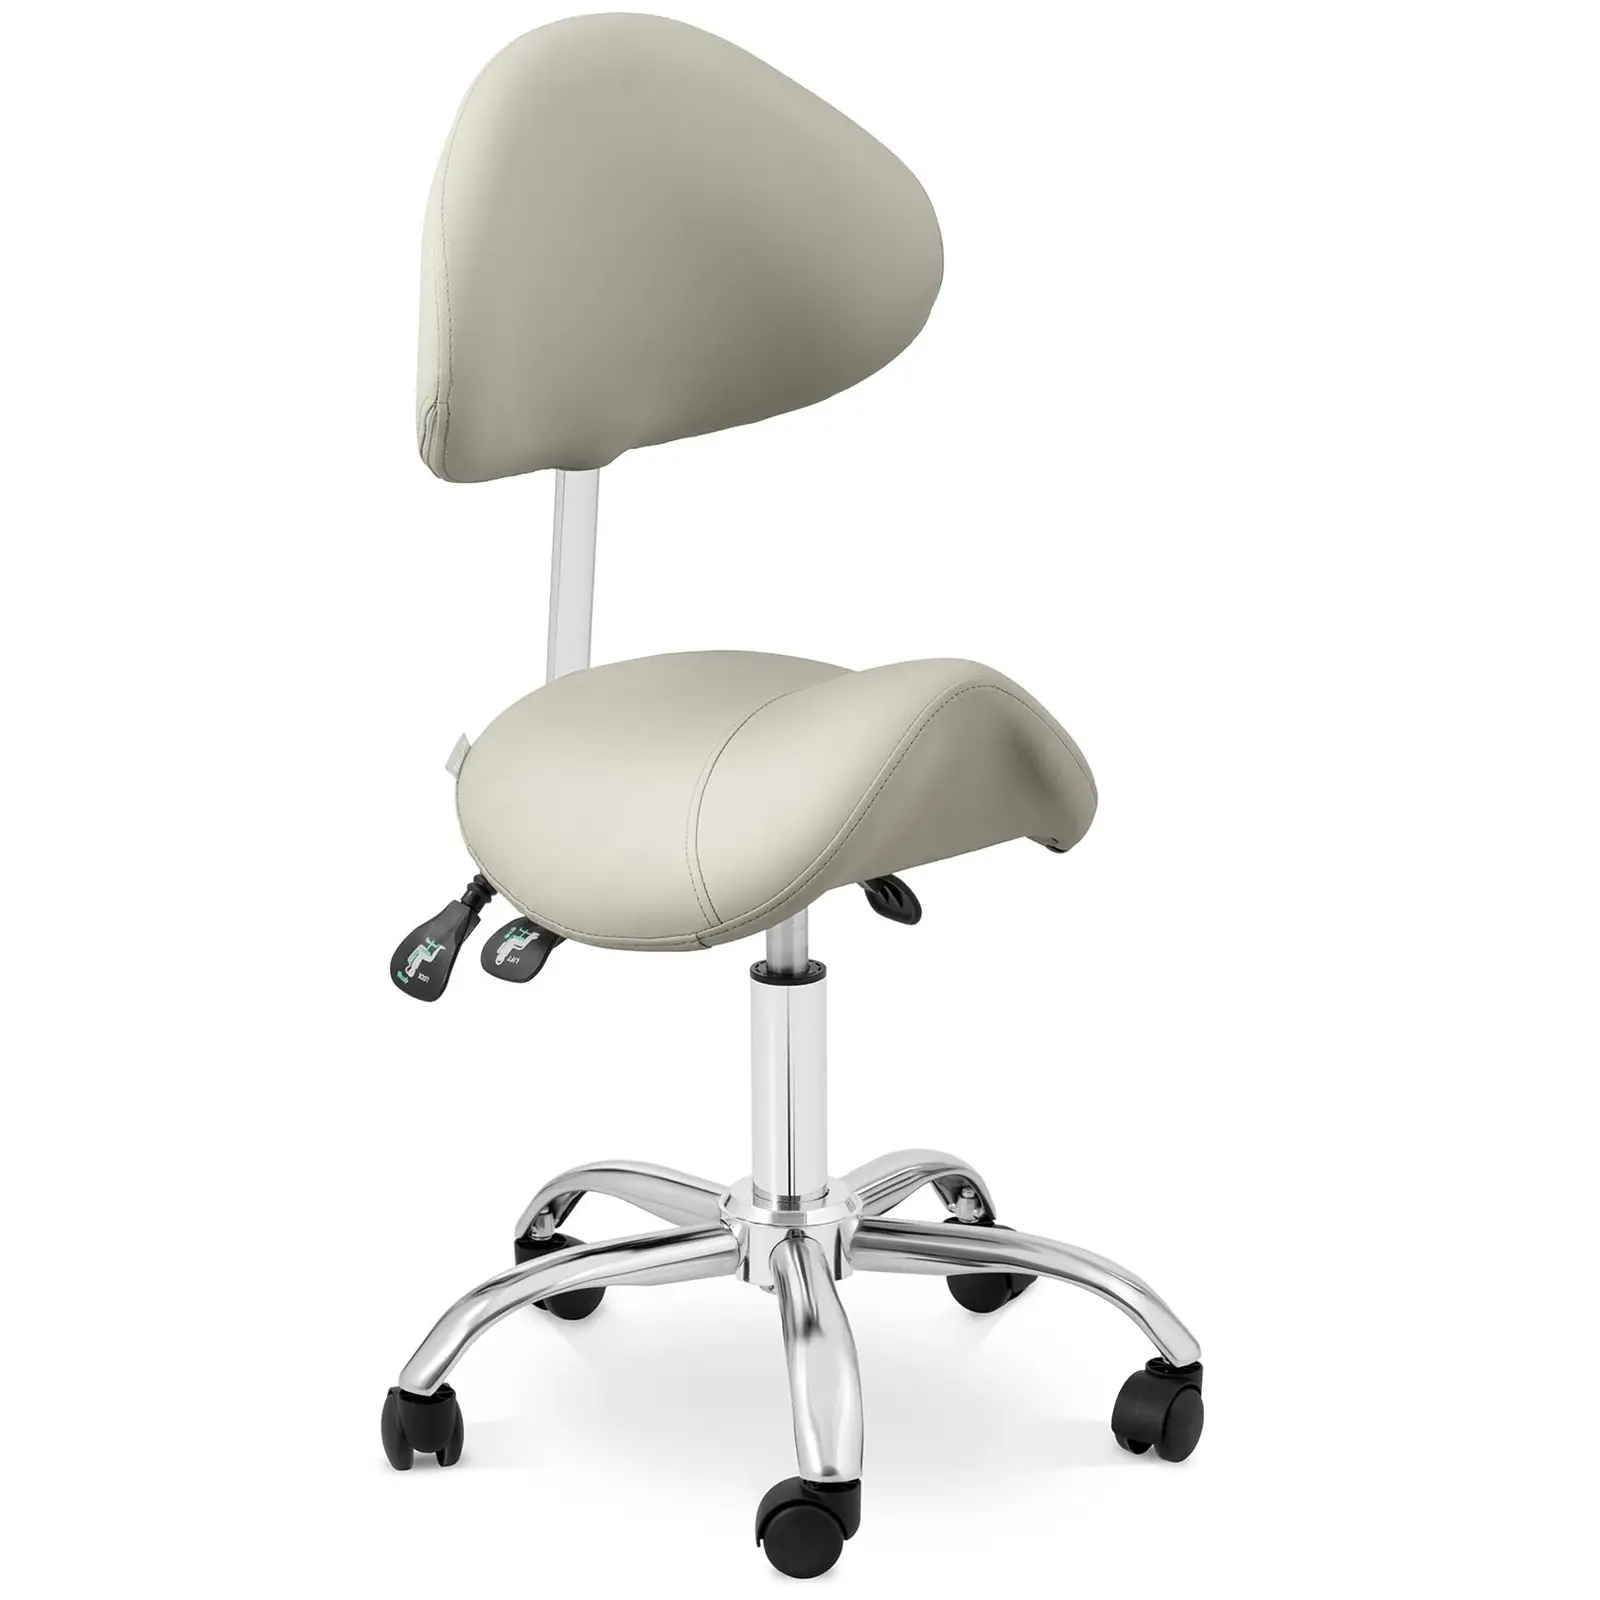 Krzesło siodłowe - oparcie i siedzisko z regulacją wysokości - 55-69 cm - 150 kg - Szary, Srebrny